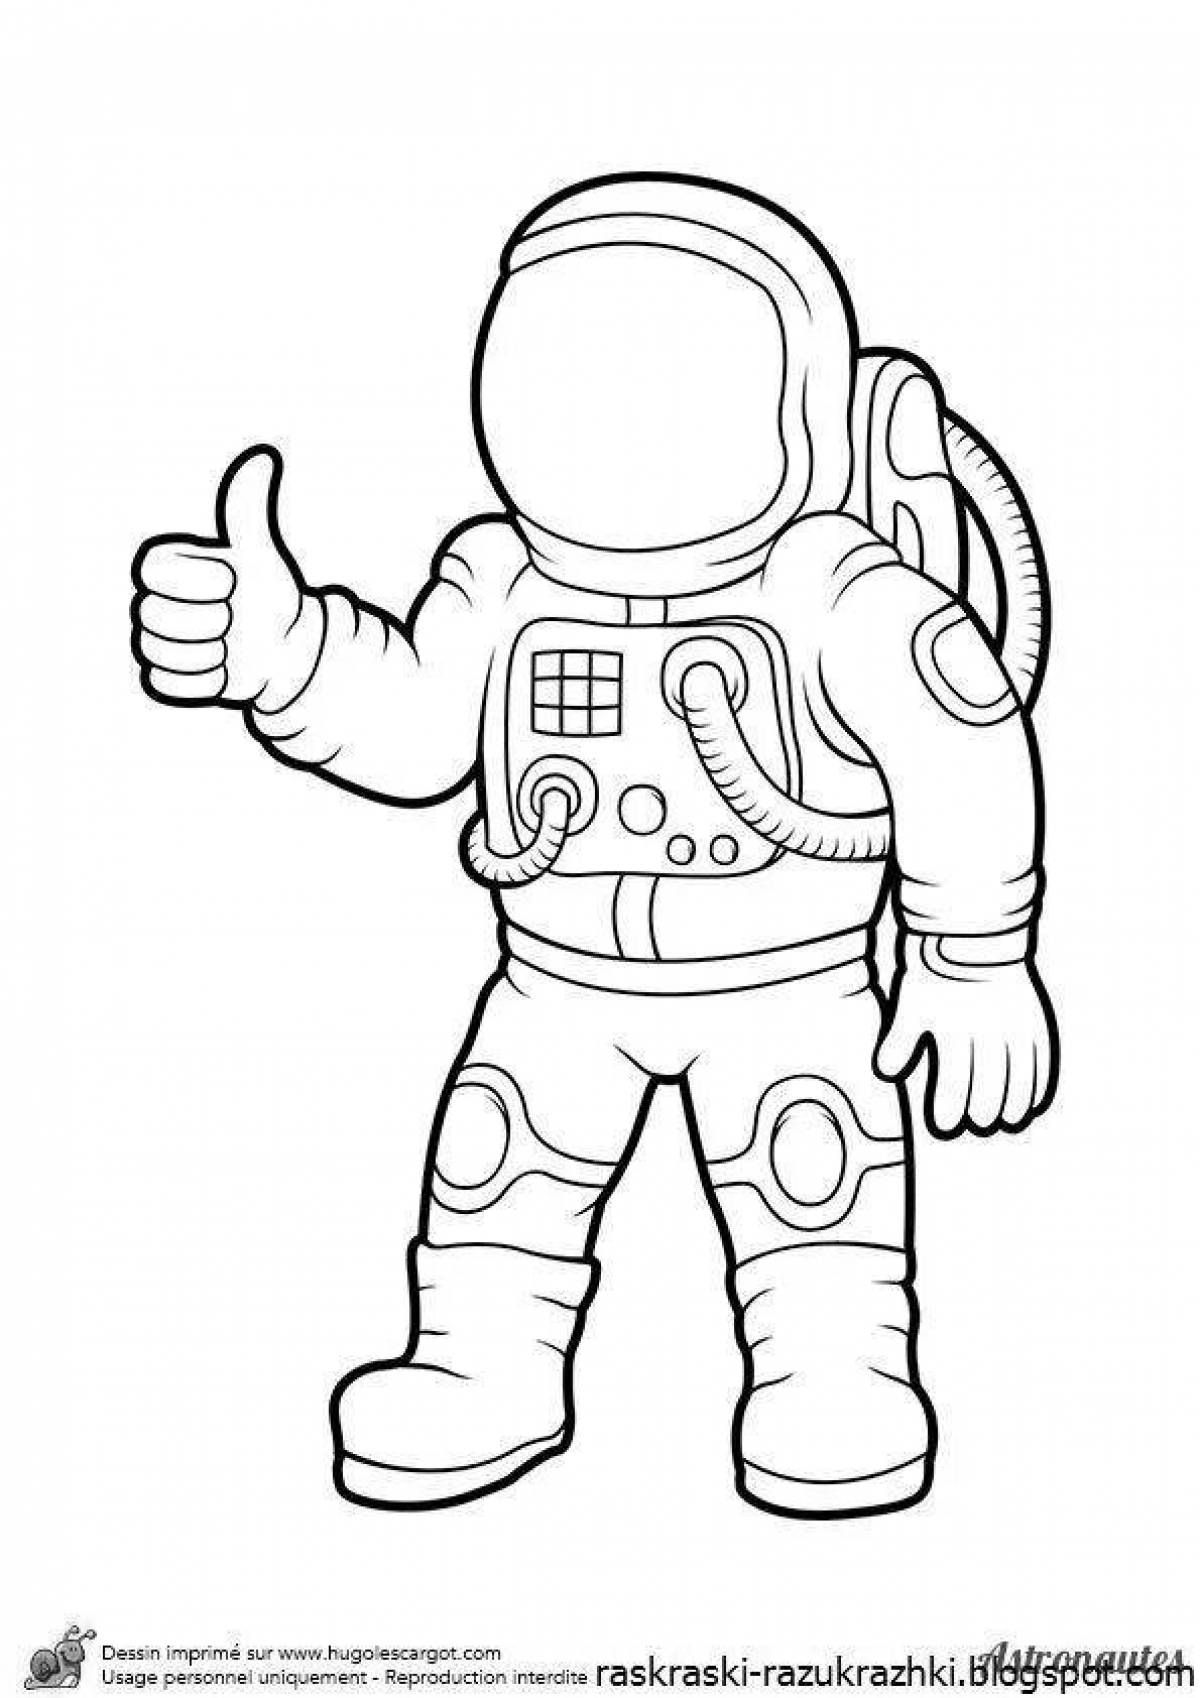 Шаблон космонавта для аппликации для детей. Раскраска космонавт в скафандре. Космонавт раскраска для детей. Раскраска Космонавта в скафандре для детей. Космонавт раскраска для малышей.